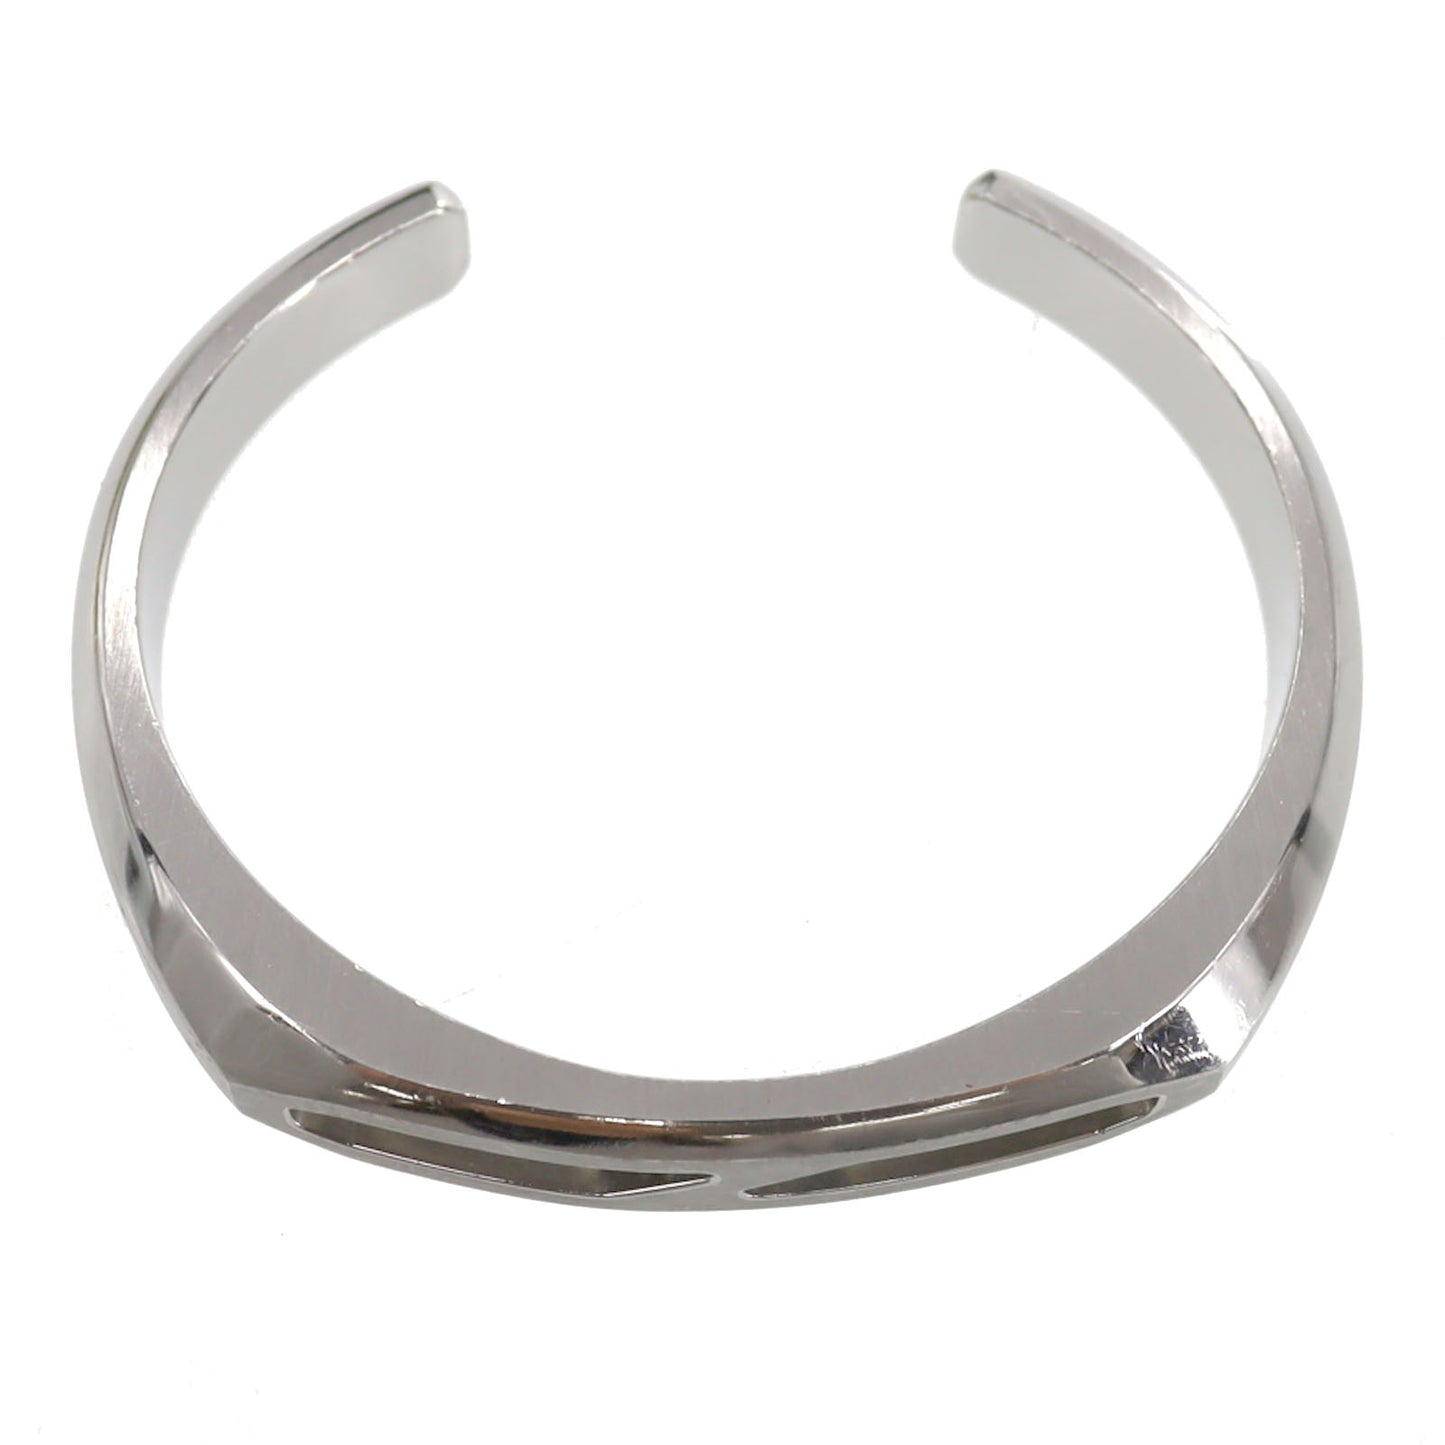 Hermès Bangle Bracelet Silver GD 02 20 T5 #CF810